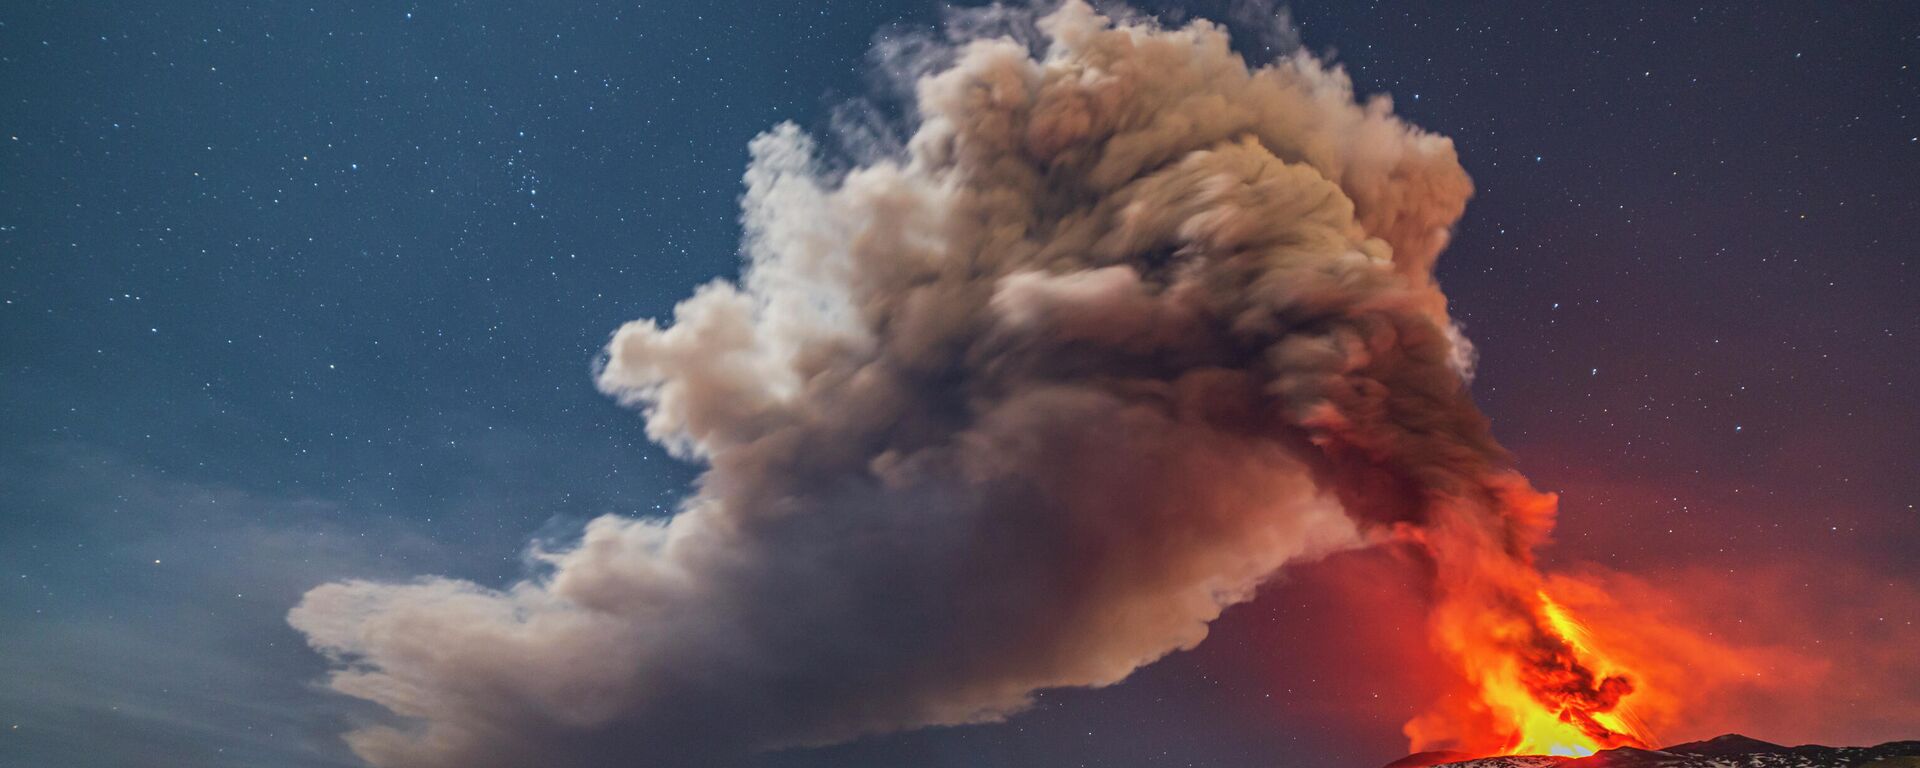 Ерупција вулкана Етна на Сицилији - Sputnik Србија, 1920, 28.11.2022